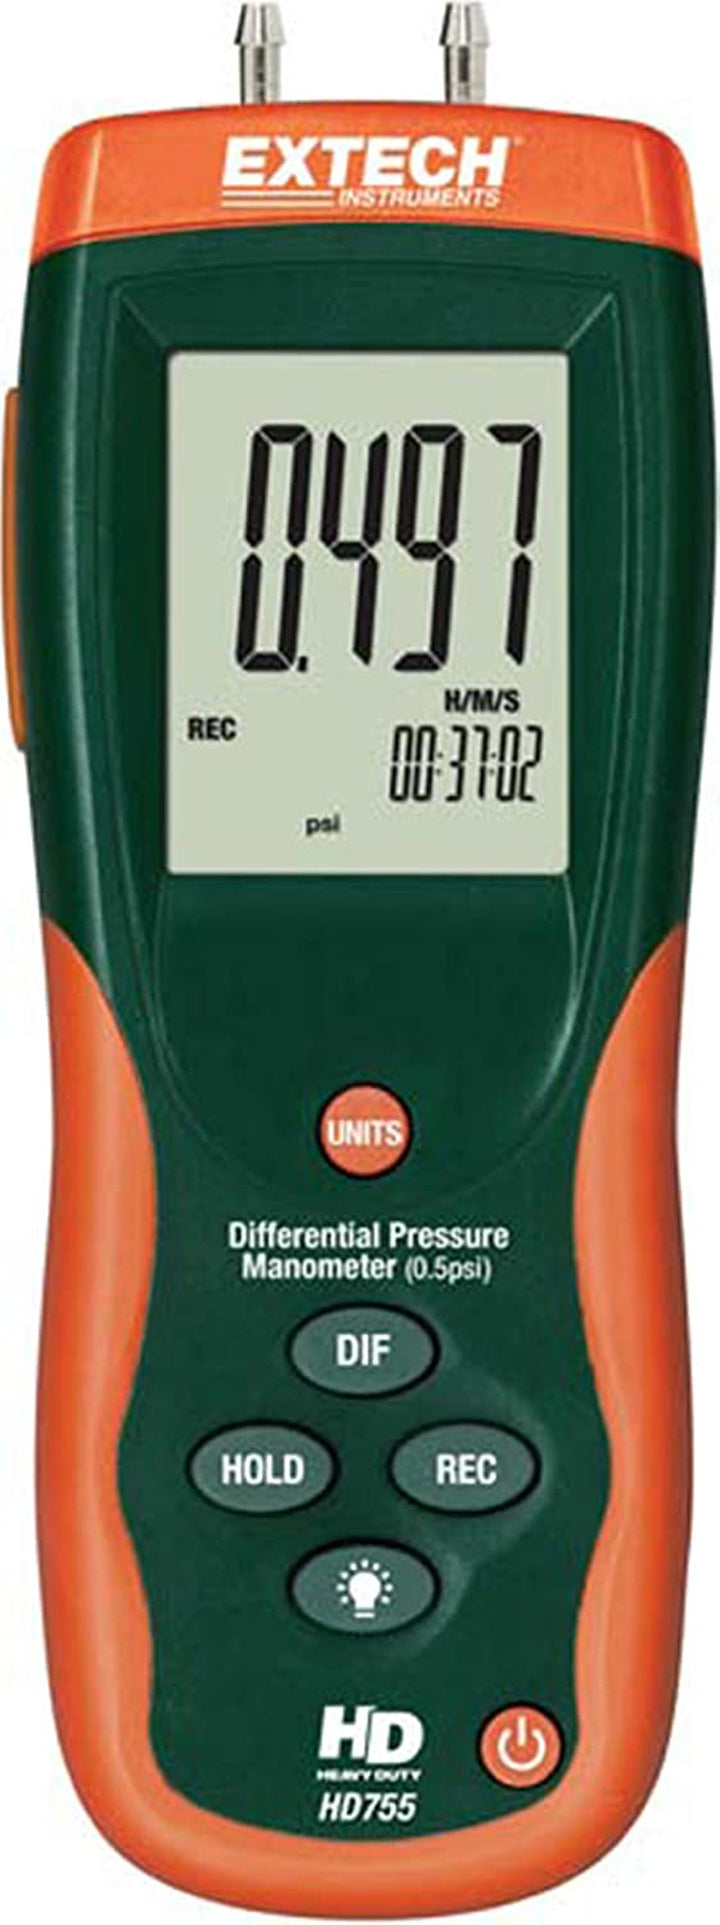 HD755 Differential Pressure Manometer- 0.5PSI